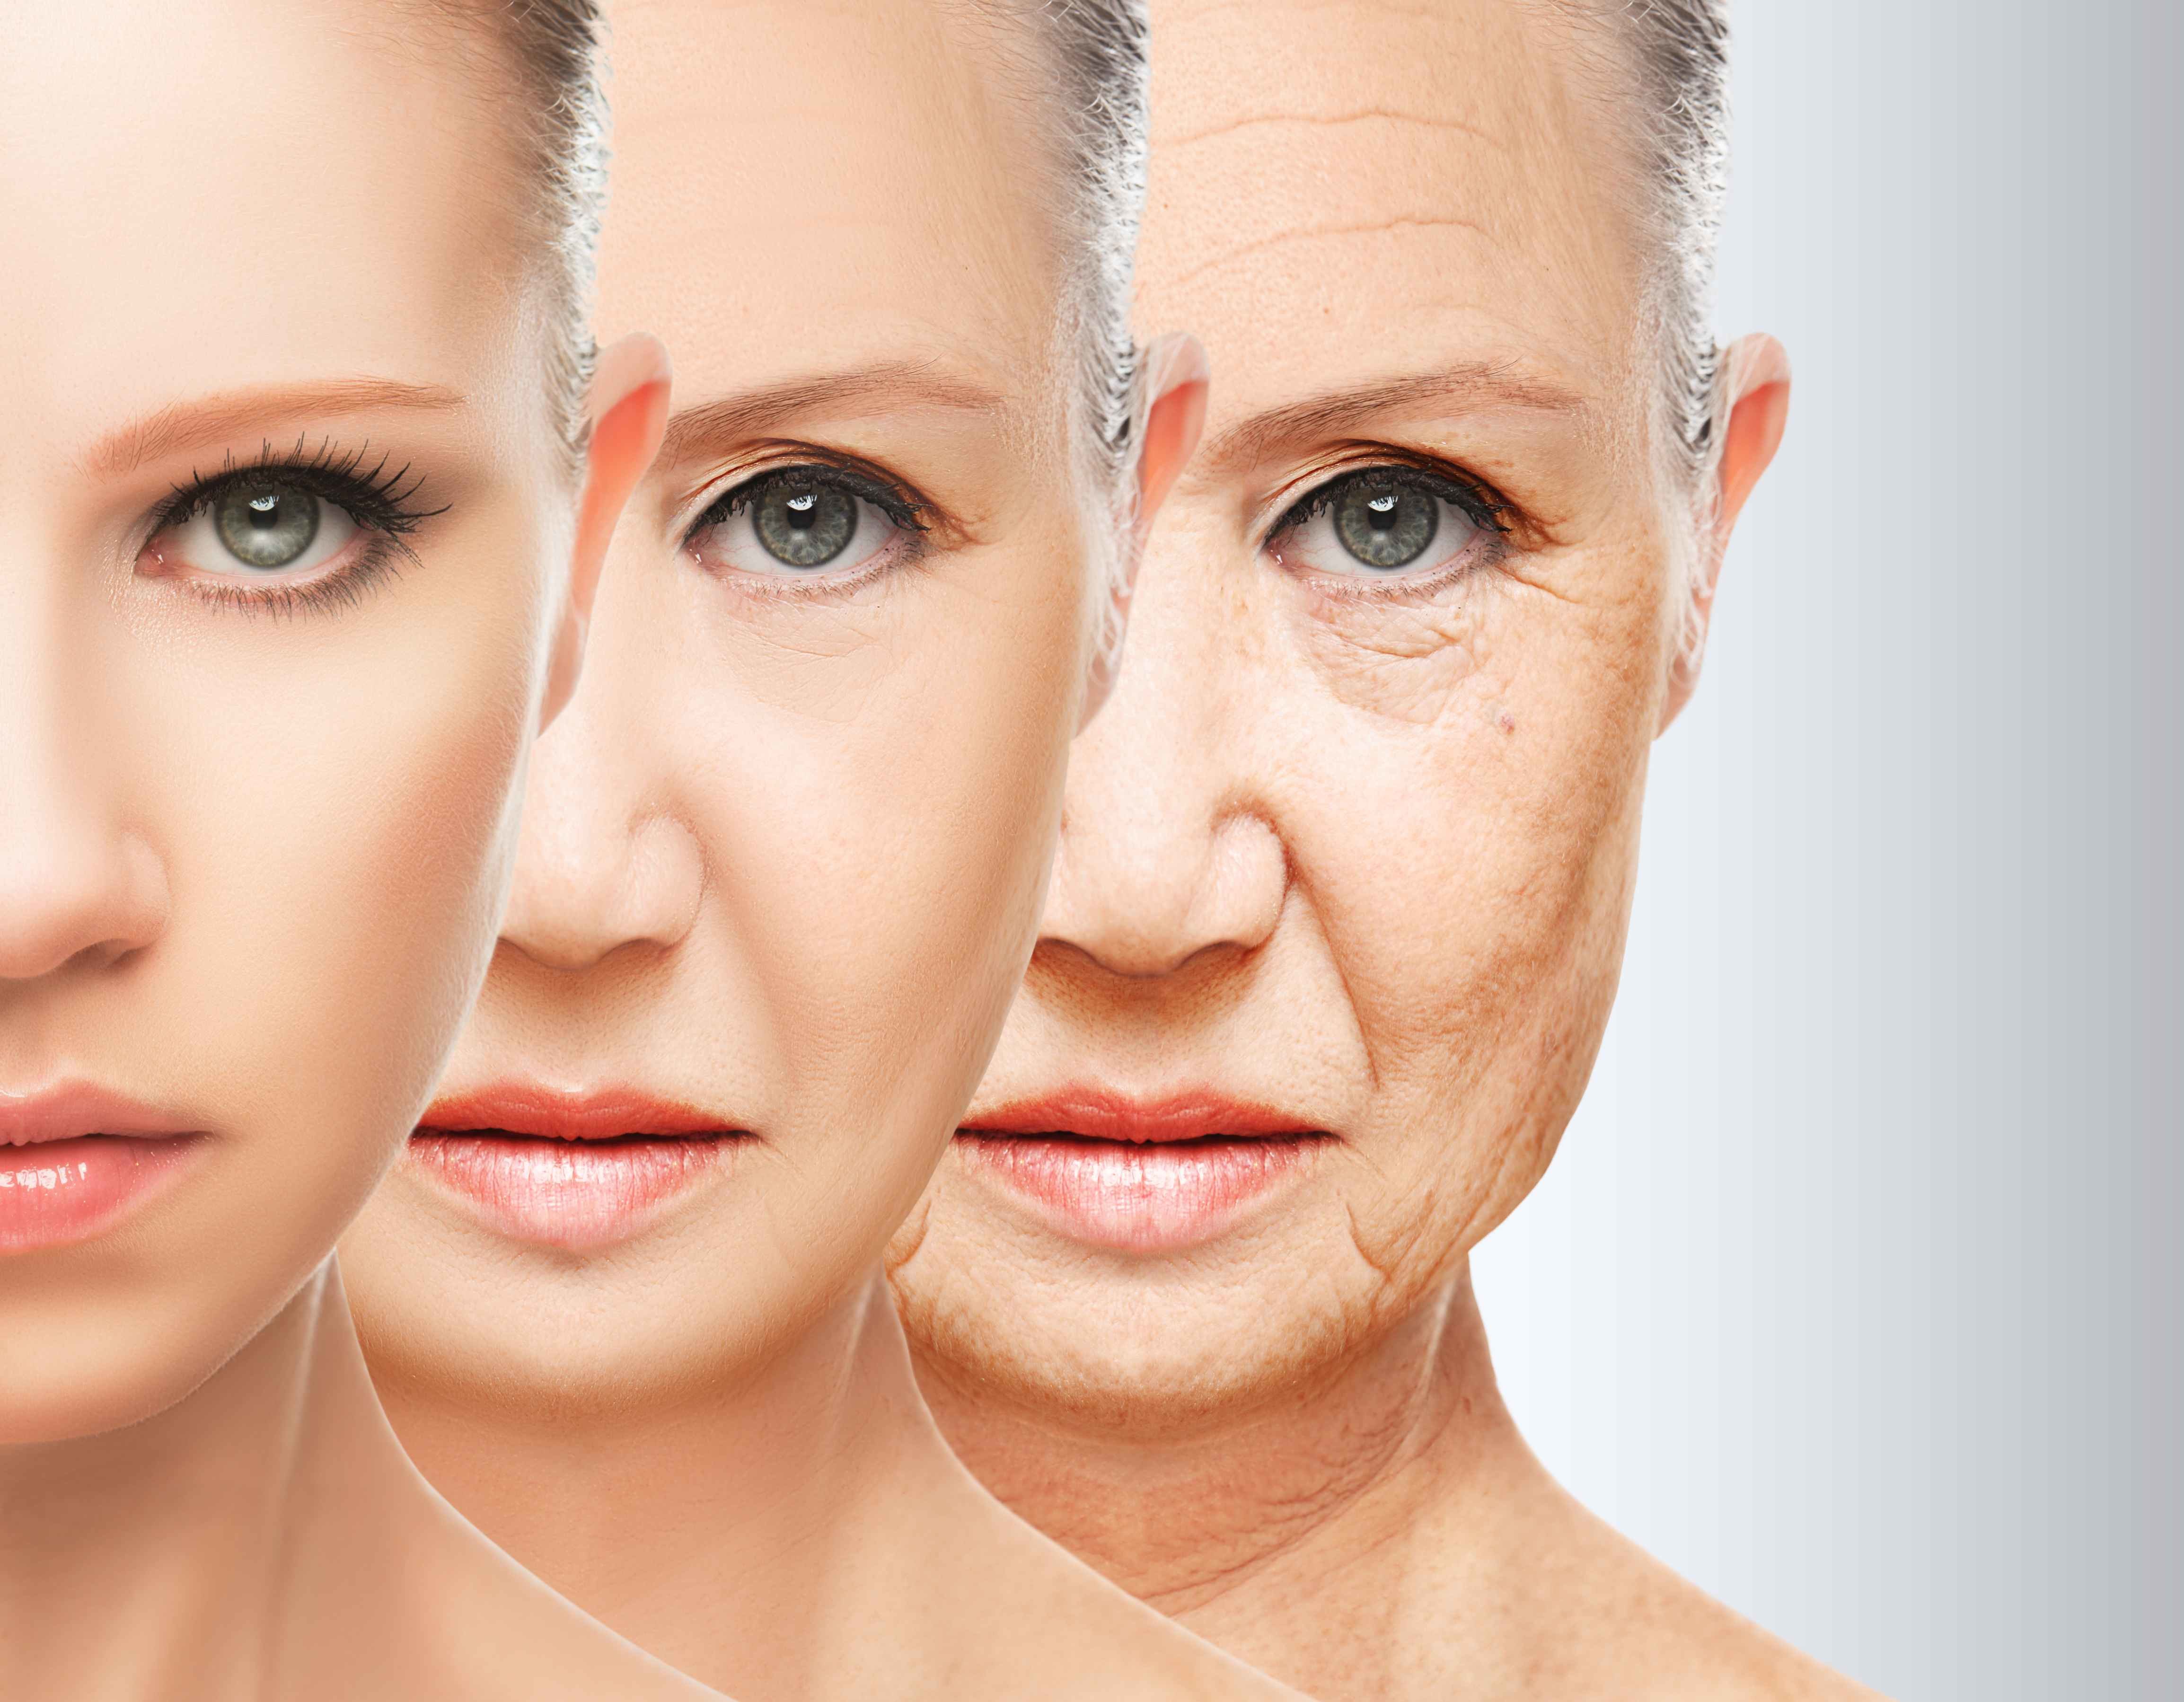 雌激素降低加快女性衰老,那多吃雌激素补品可对抗衰老?